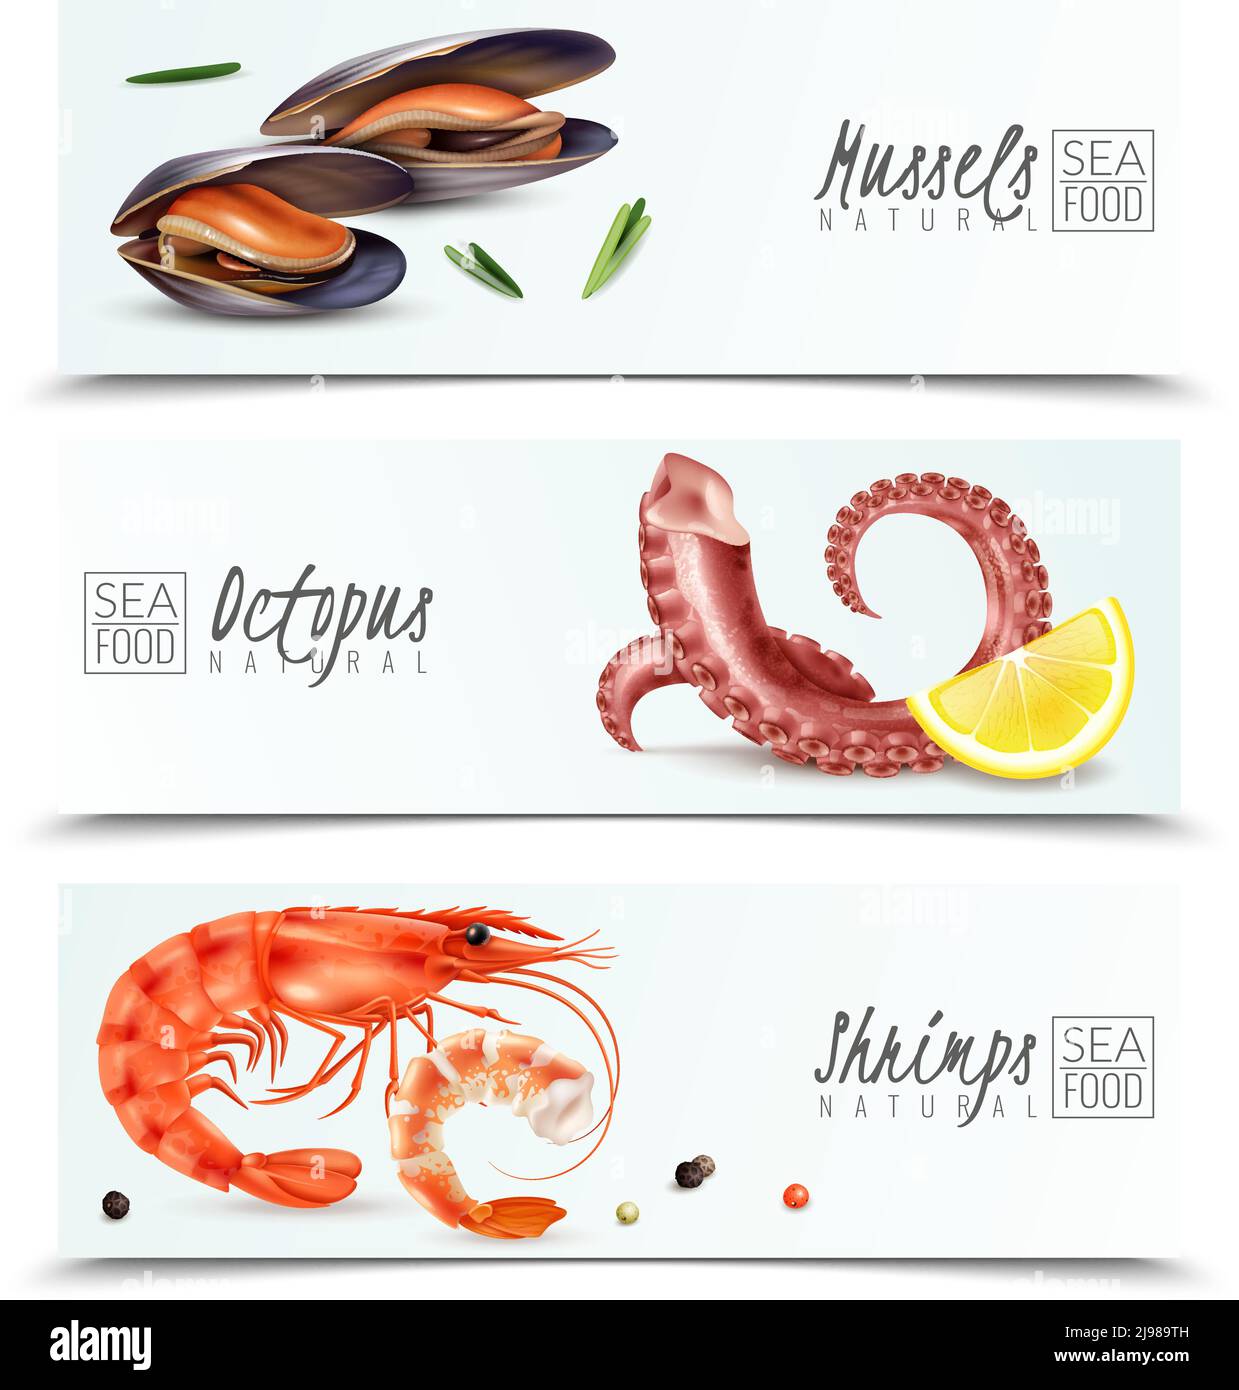 Choix durable de fruits de mer 3 bannières horizontales réalistes avec crevettes à moules illustration vectorielle isolée des ingrédients du cocktail hors-d'œuvre de l'octopus Illustration de Vecteur